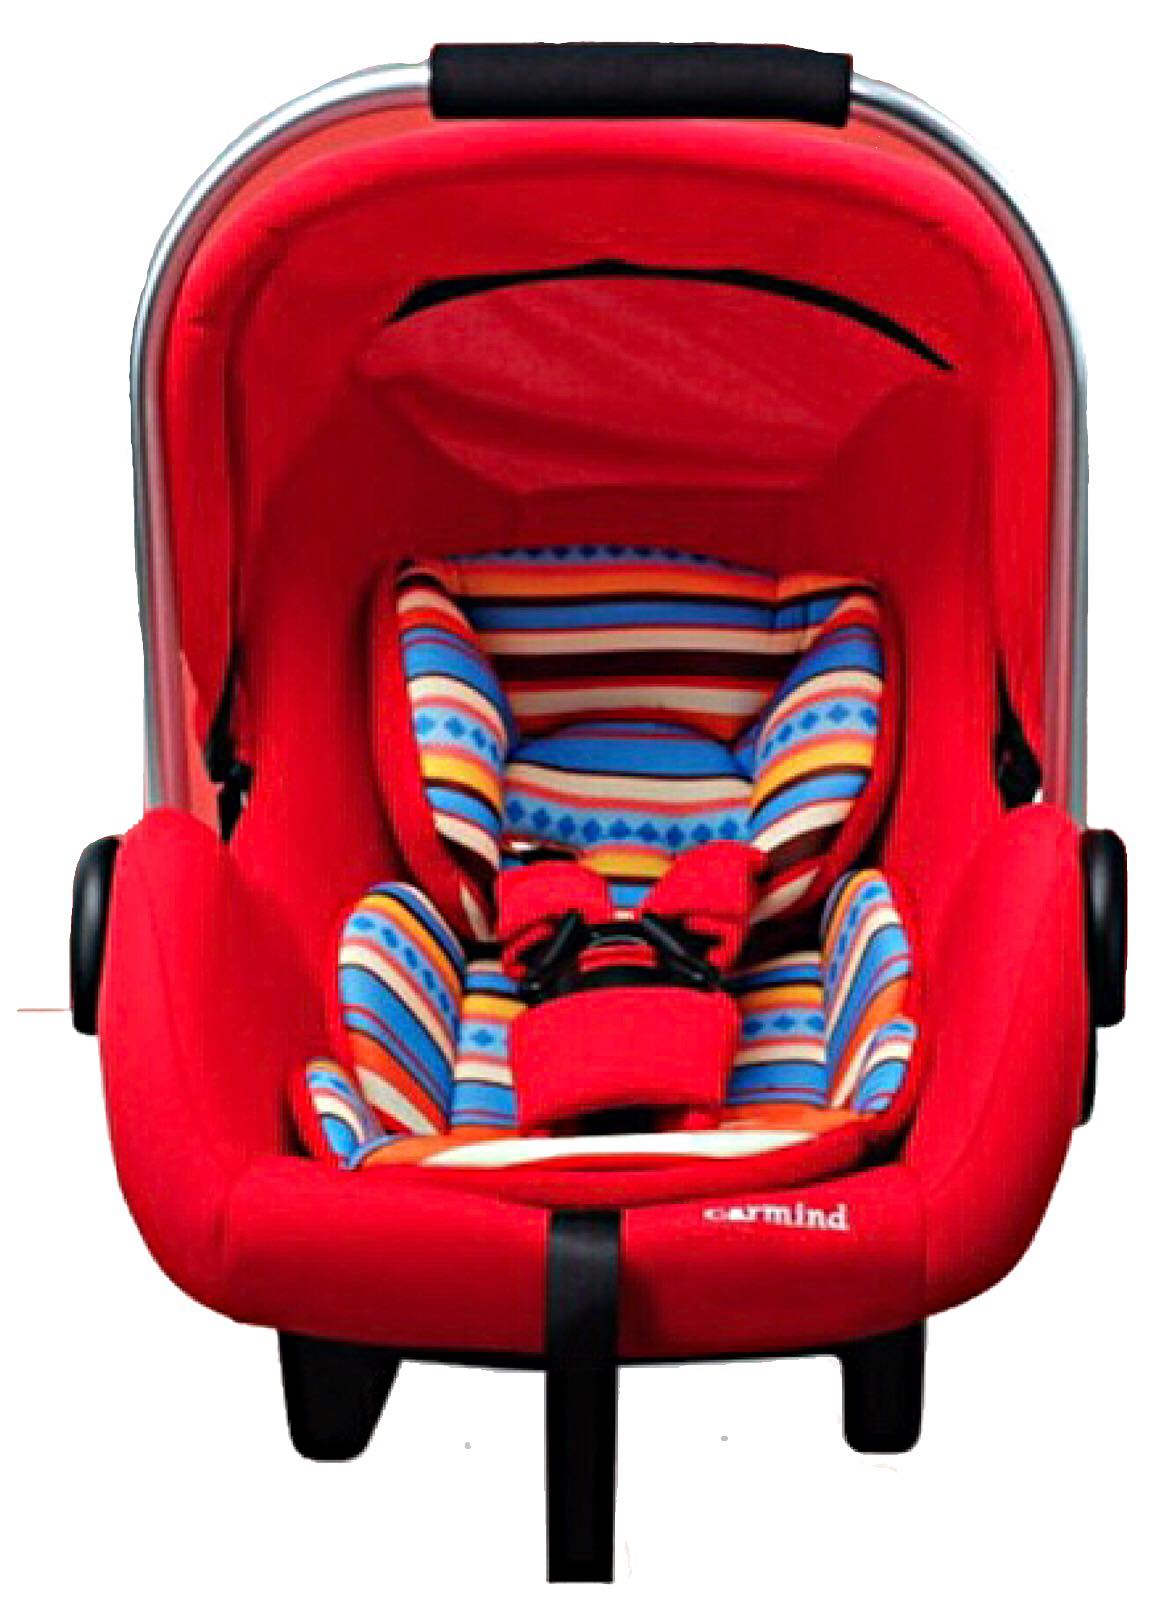 EXCEED : คาร์ซีท (car seat) ที่นั่งในรถยนต์แบบกระเช้า Carmind สำหรับเด็ก0-15เดือน ขนาด 70x41x33 BCS001